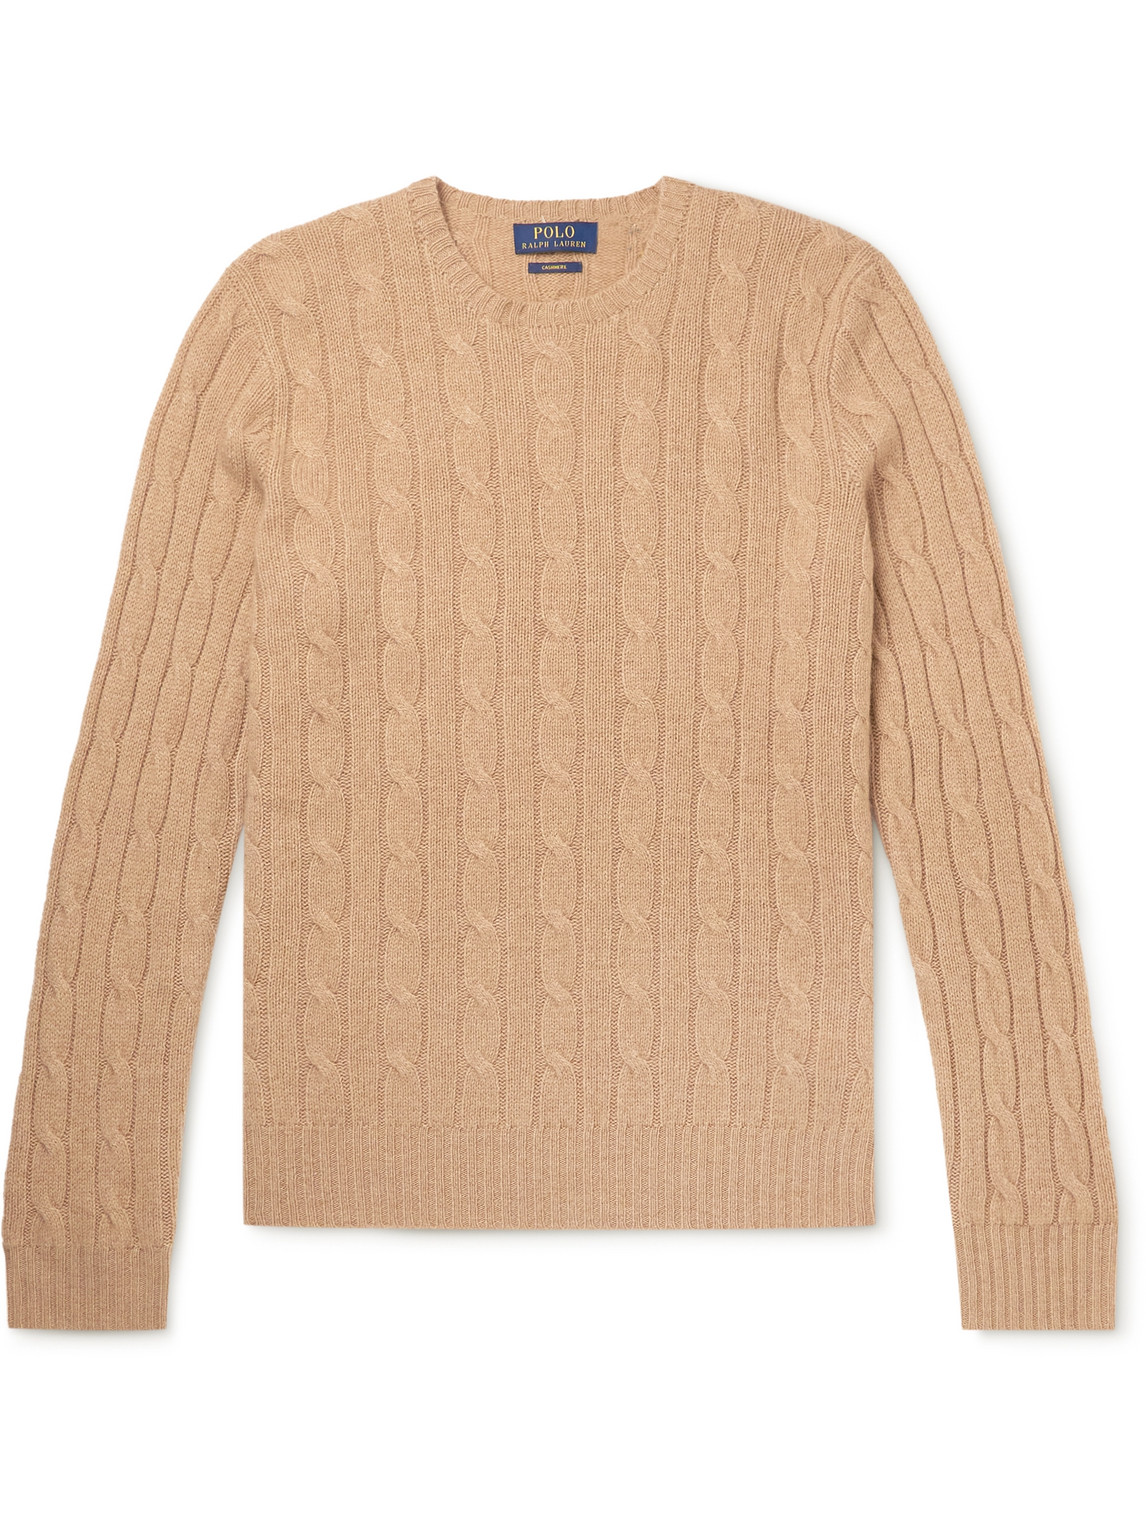 Polo Ralph Lauren - Cable-Knit Cashmere Sweater - Men - Brown - XL pour  hommes